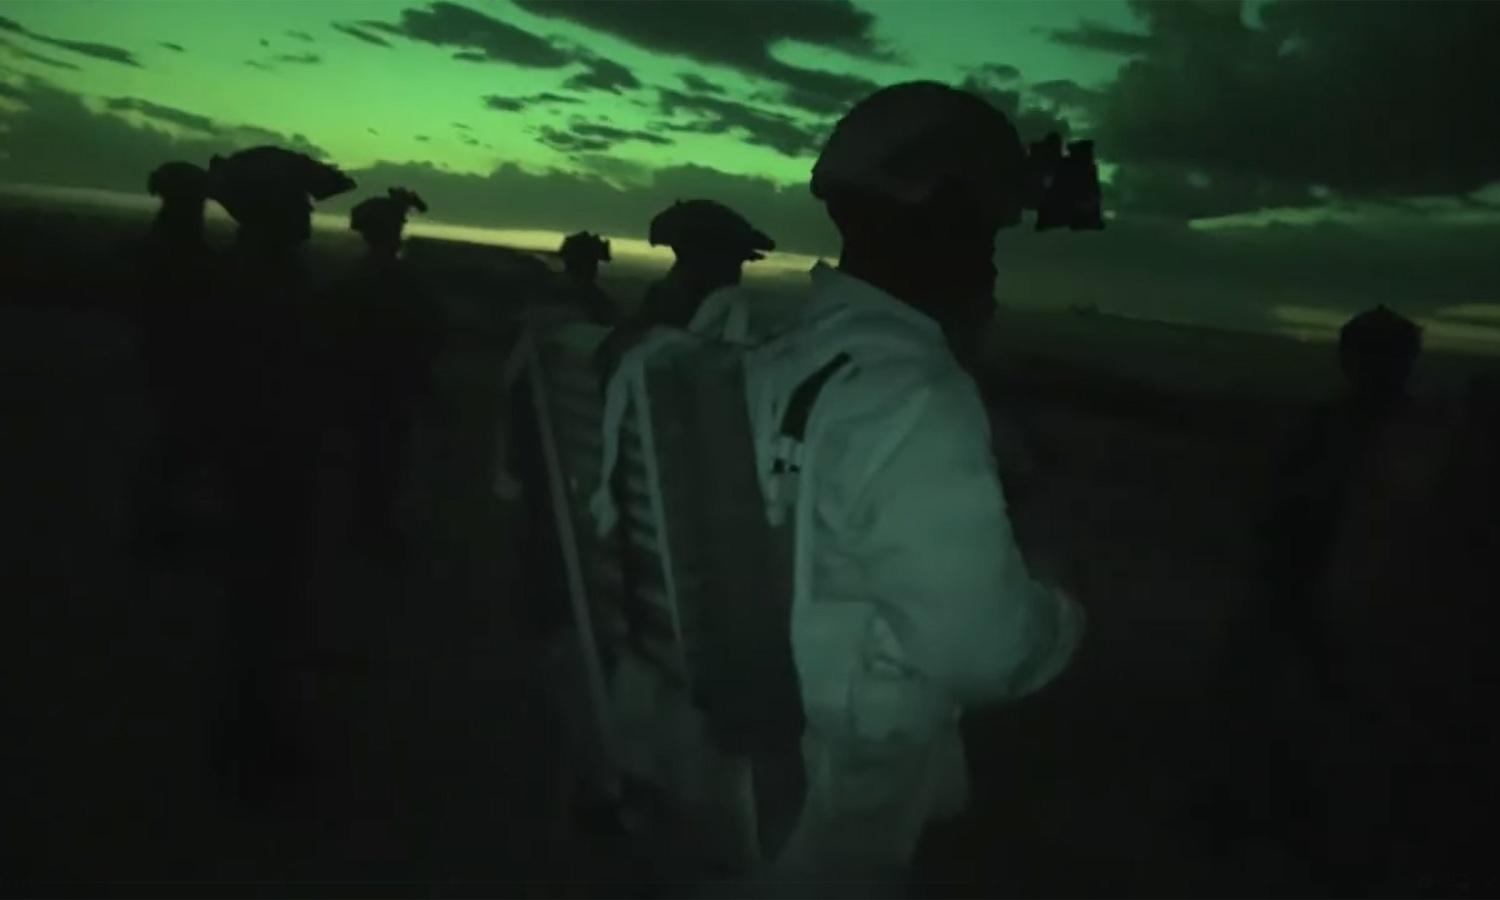 مقاتلون من "قوات سوريا الديمقراطية" (قسد) خلال حملة أمنية استهدفت خلايا تنظيم "الدولة" شمال شرقي سوريا (SDF)